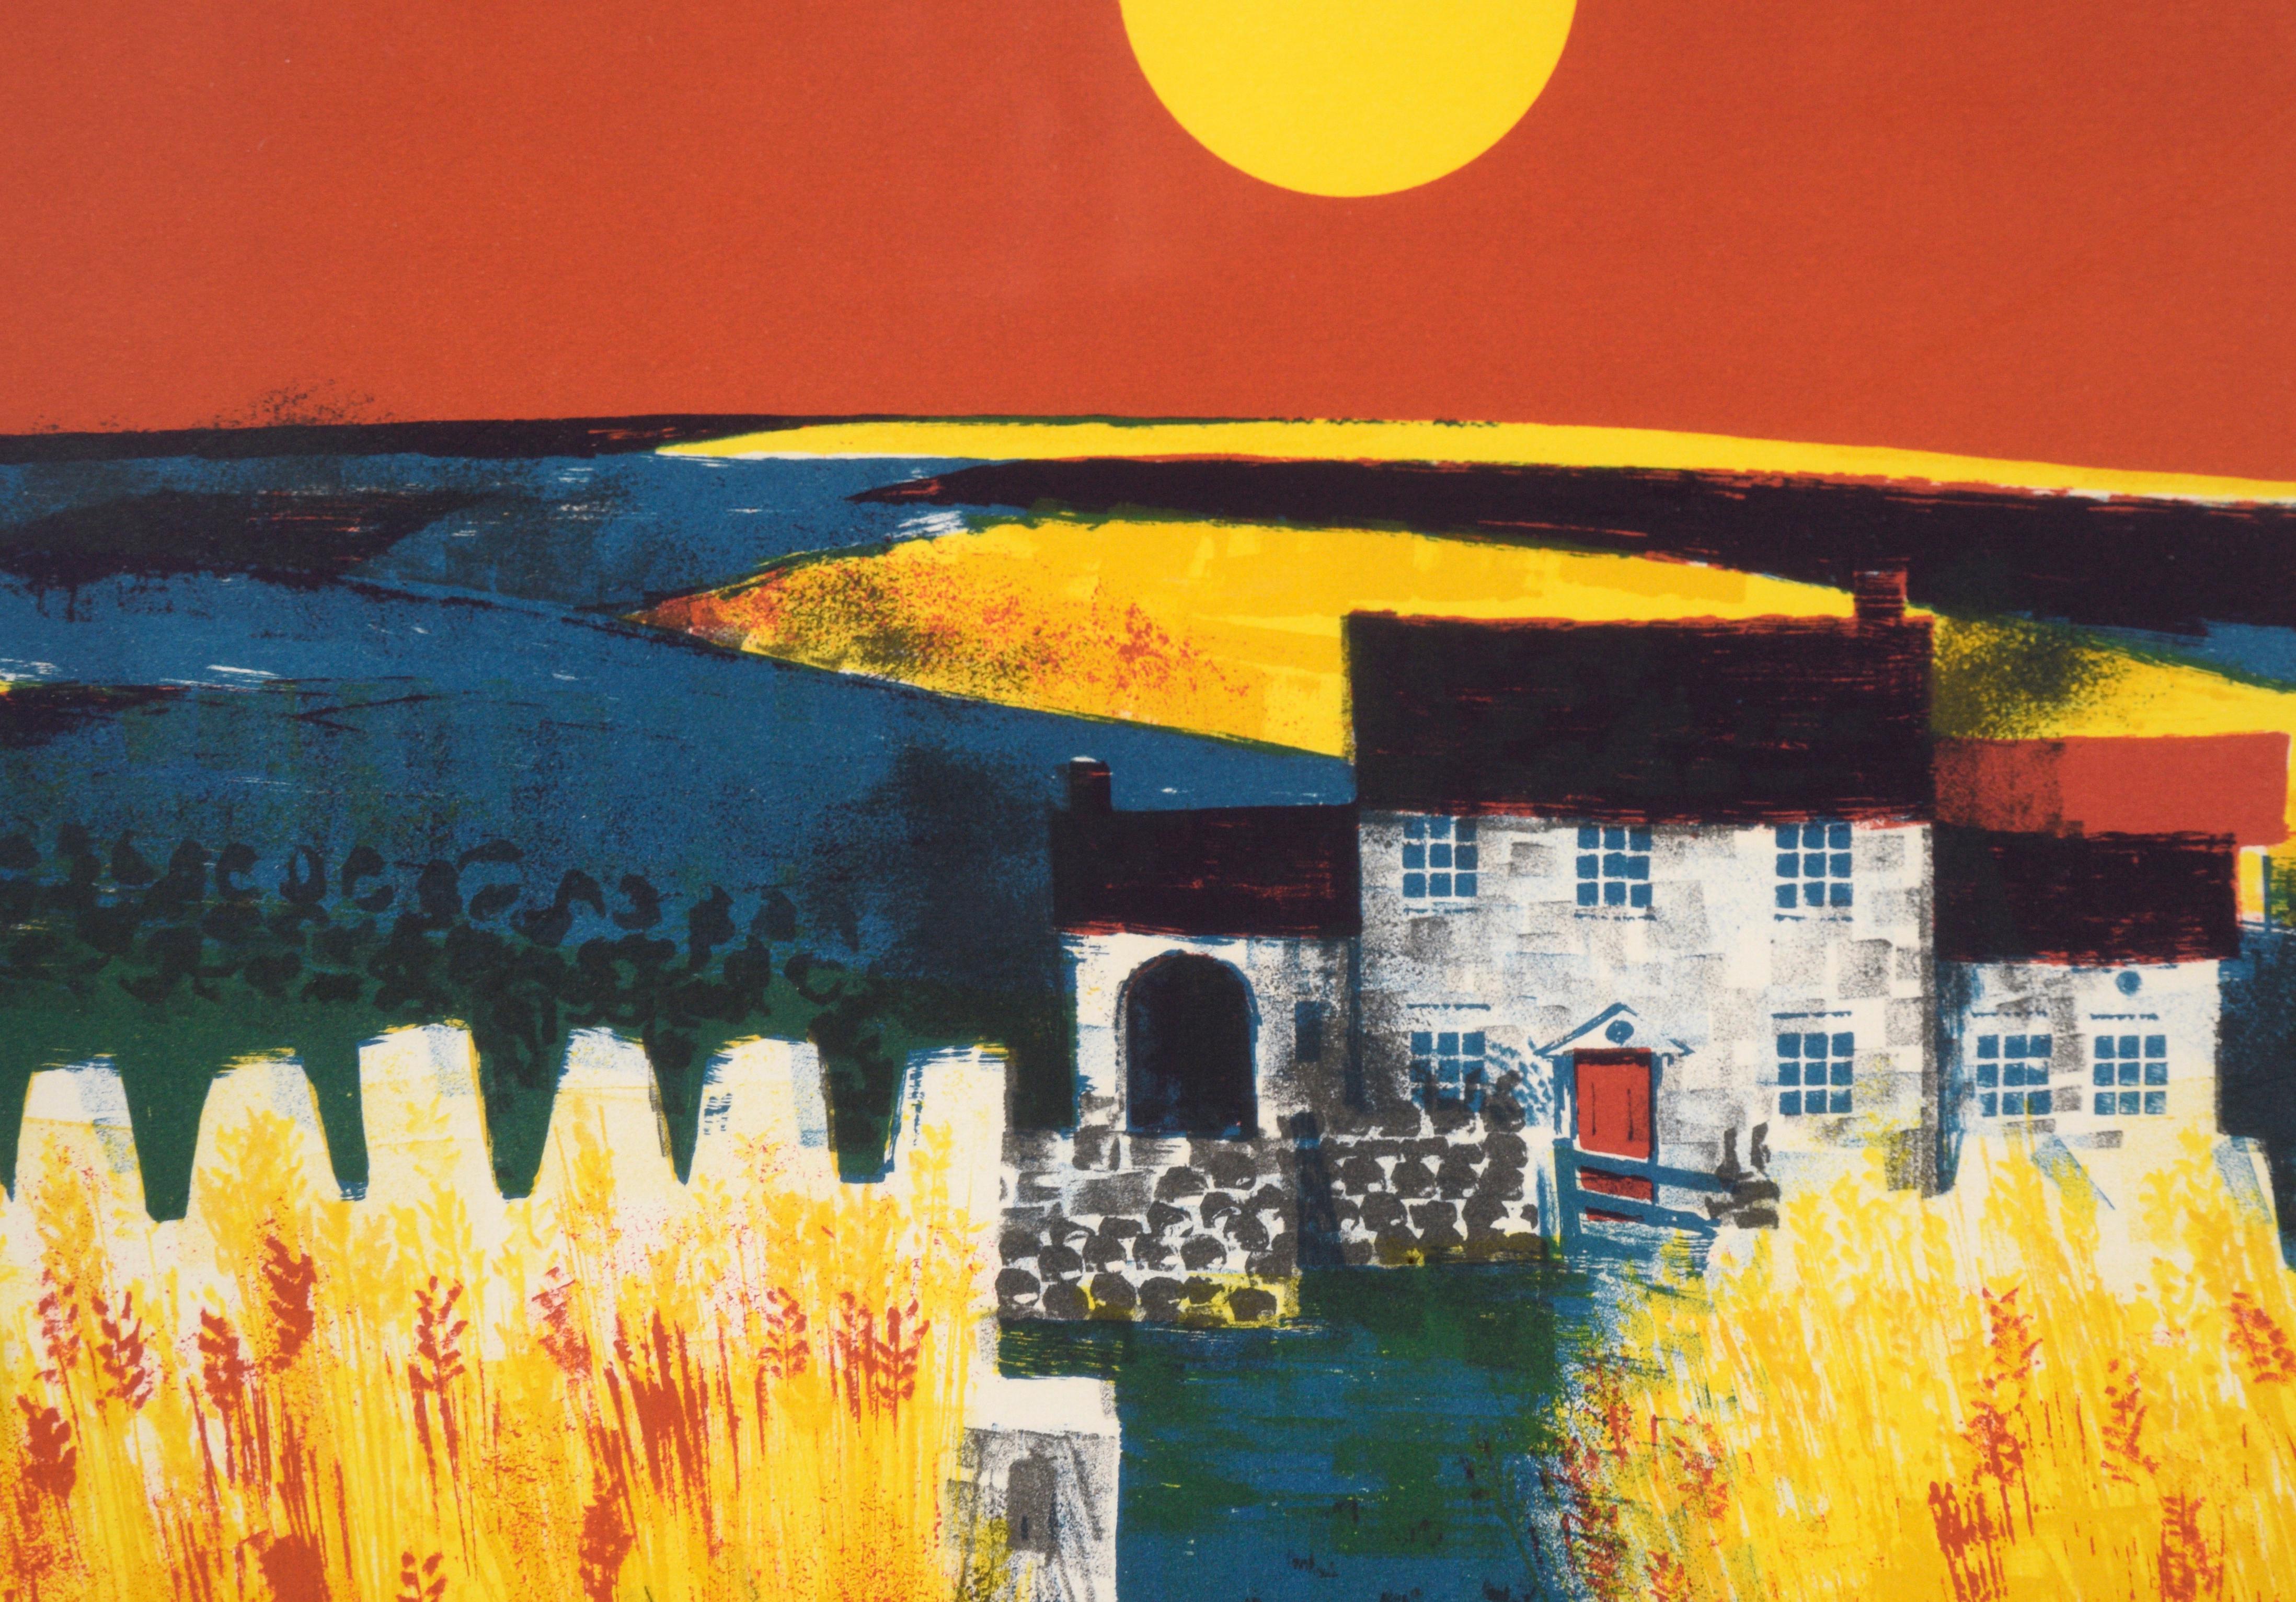 Bauernhaus und Weizenfeld bei Sonnenuntergang - Landschaftslithografie mit Tinte auf Papier

Reiche und gesättigte Landschaft von Edward Ripley (Brite, geb. 1929). Eine leuchtend gelbe Sonne hängt über einer bäuerlichen Landschaft vor einem